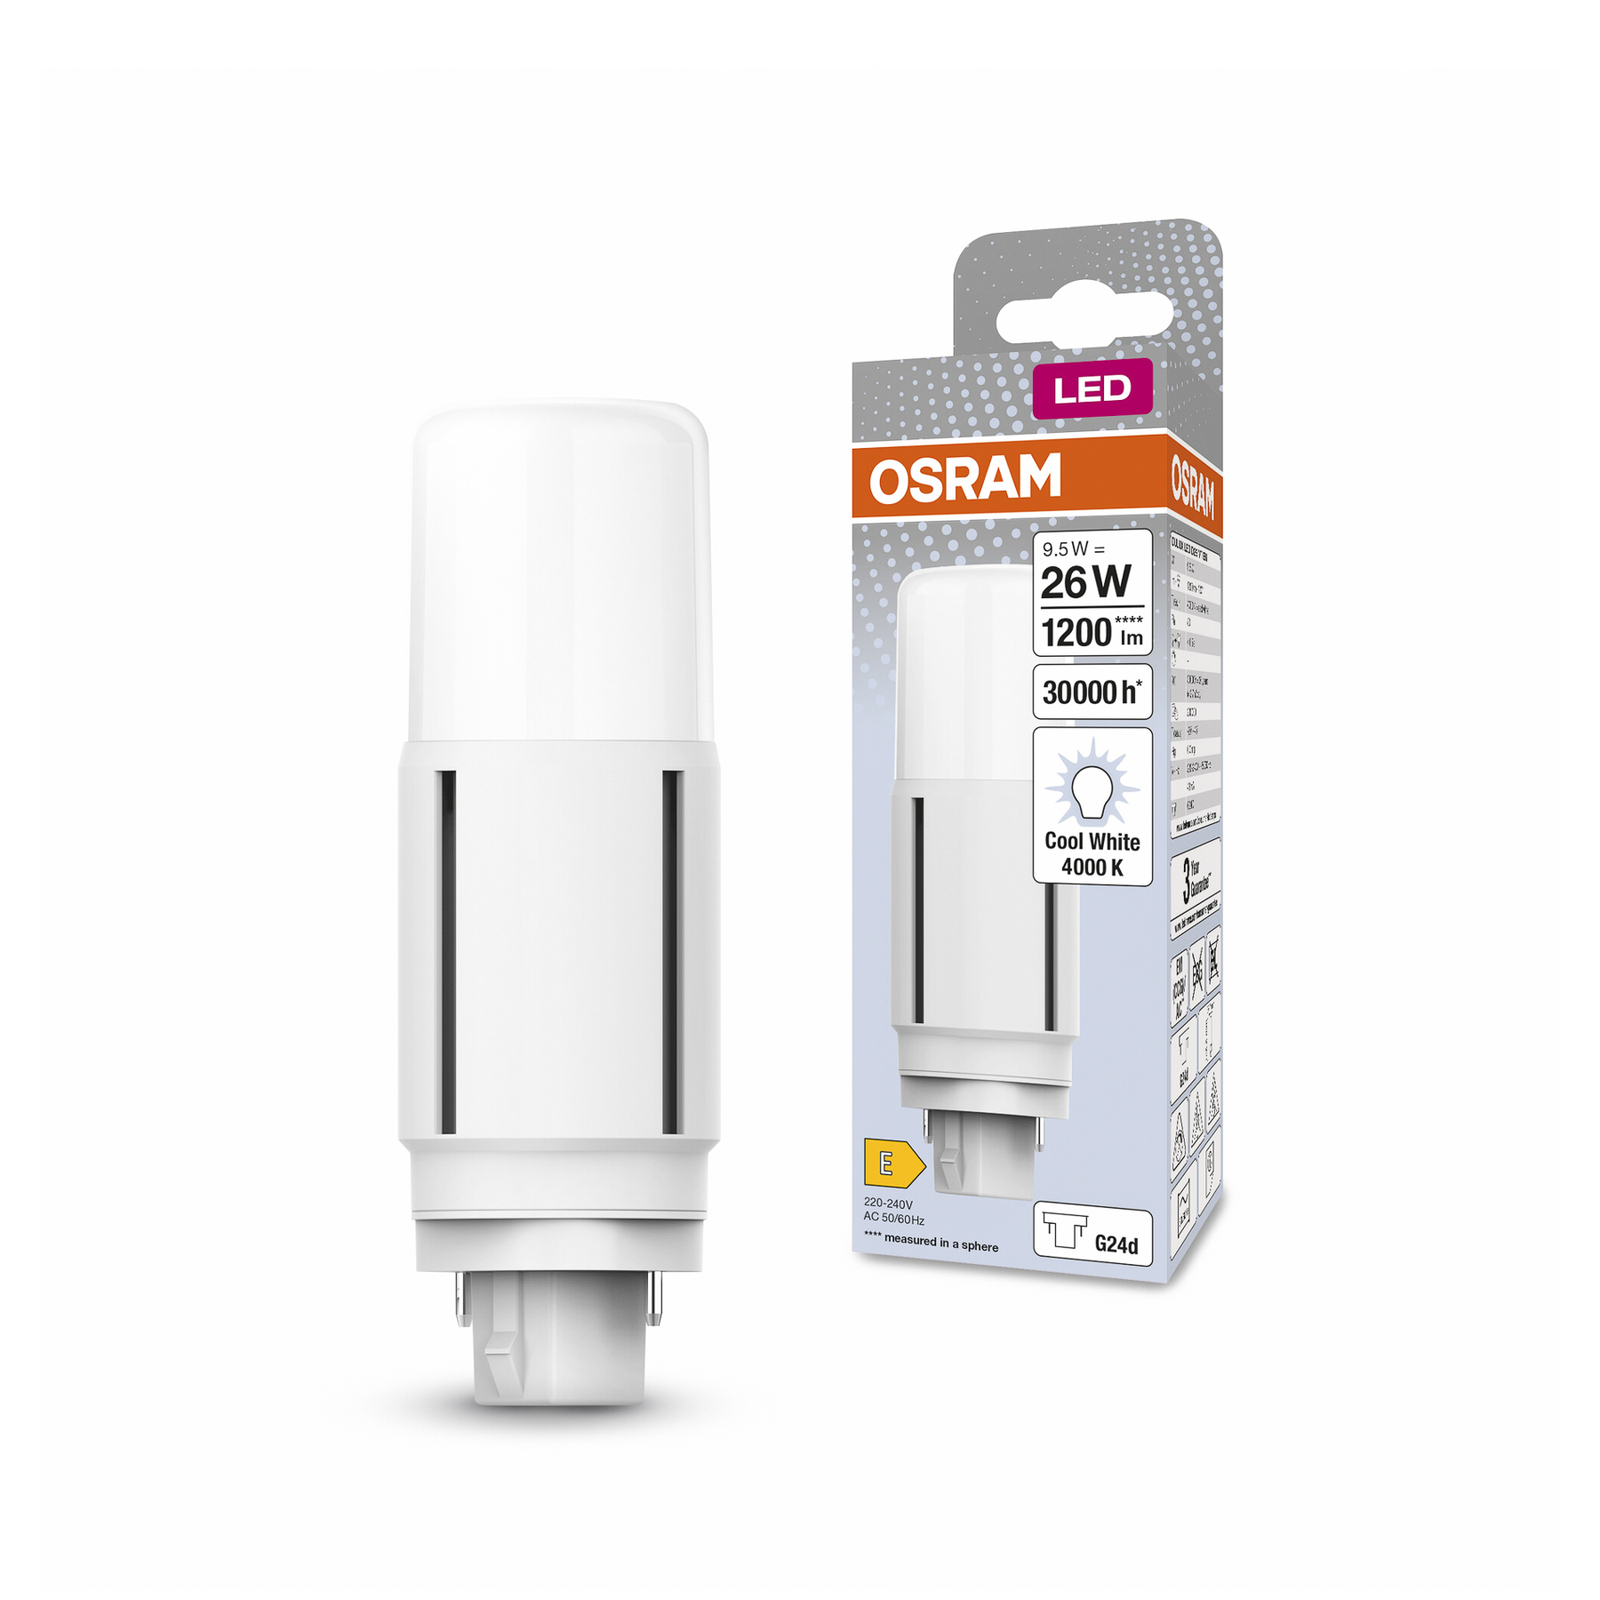 OSRAM Dulux LED svjetiljka G24d D26 VT EM/AC 9.5W 840